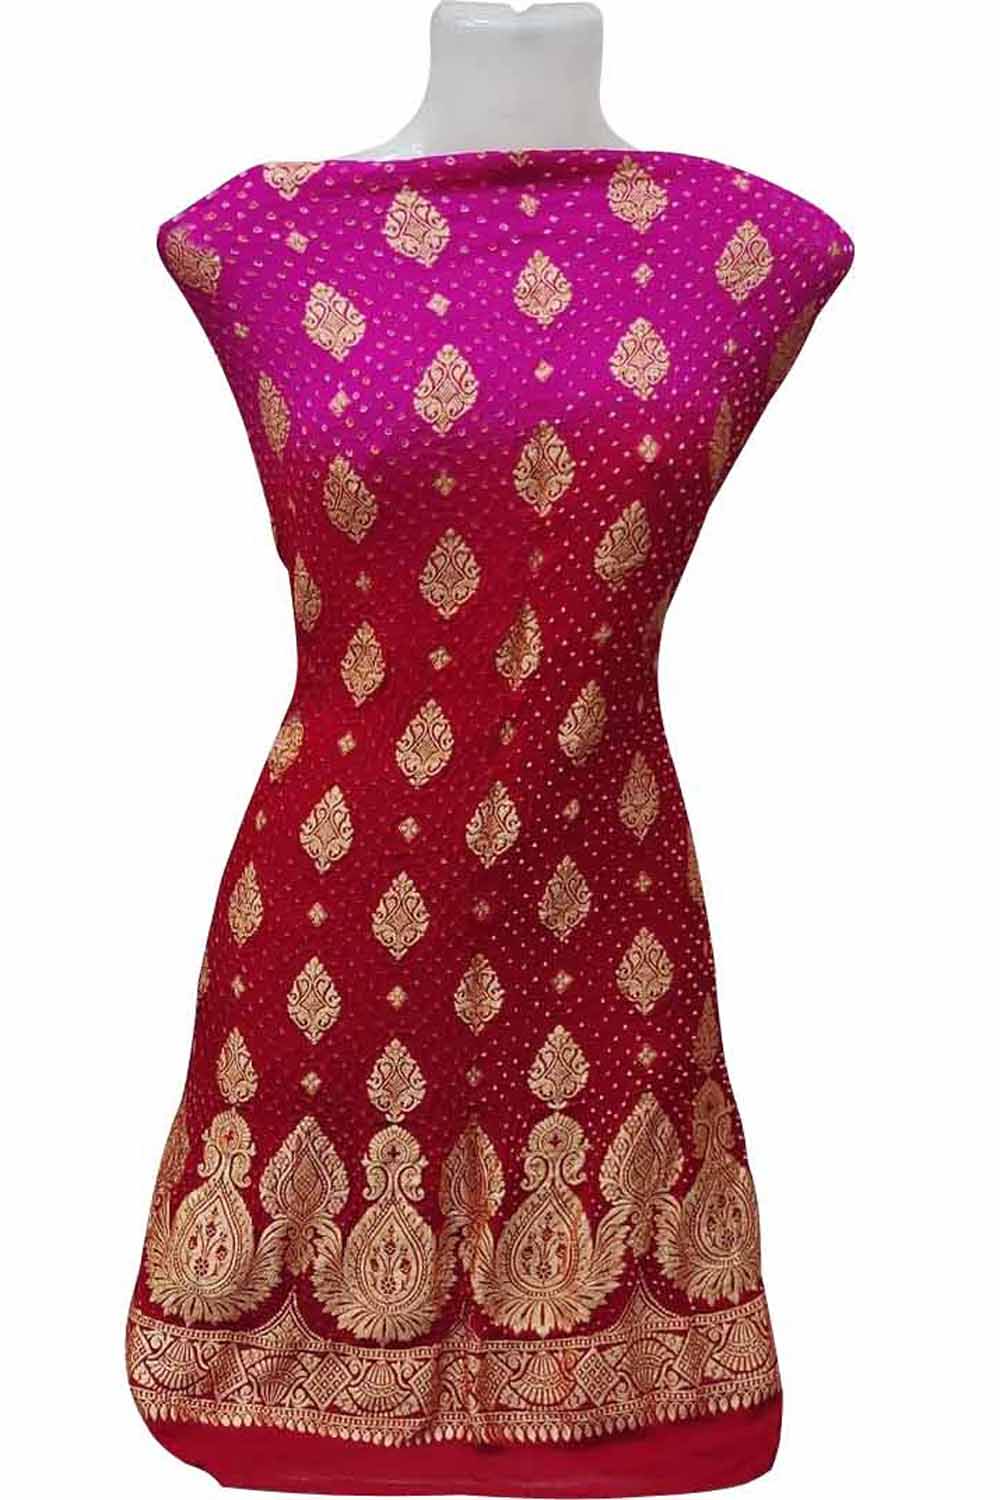 Get 20% Off on Pink & Red Banarasi Bandhani Handloom Pure Georgette Suit  Set – Luxurion World